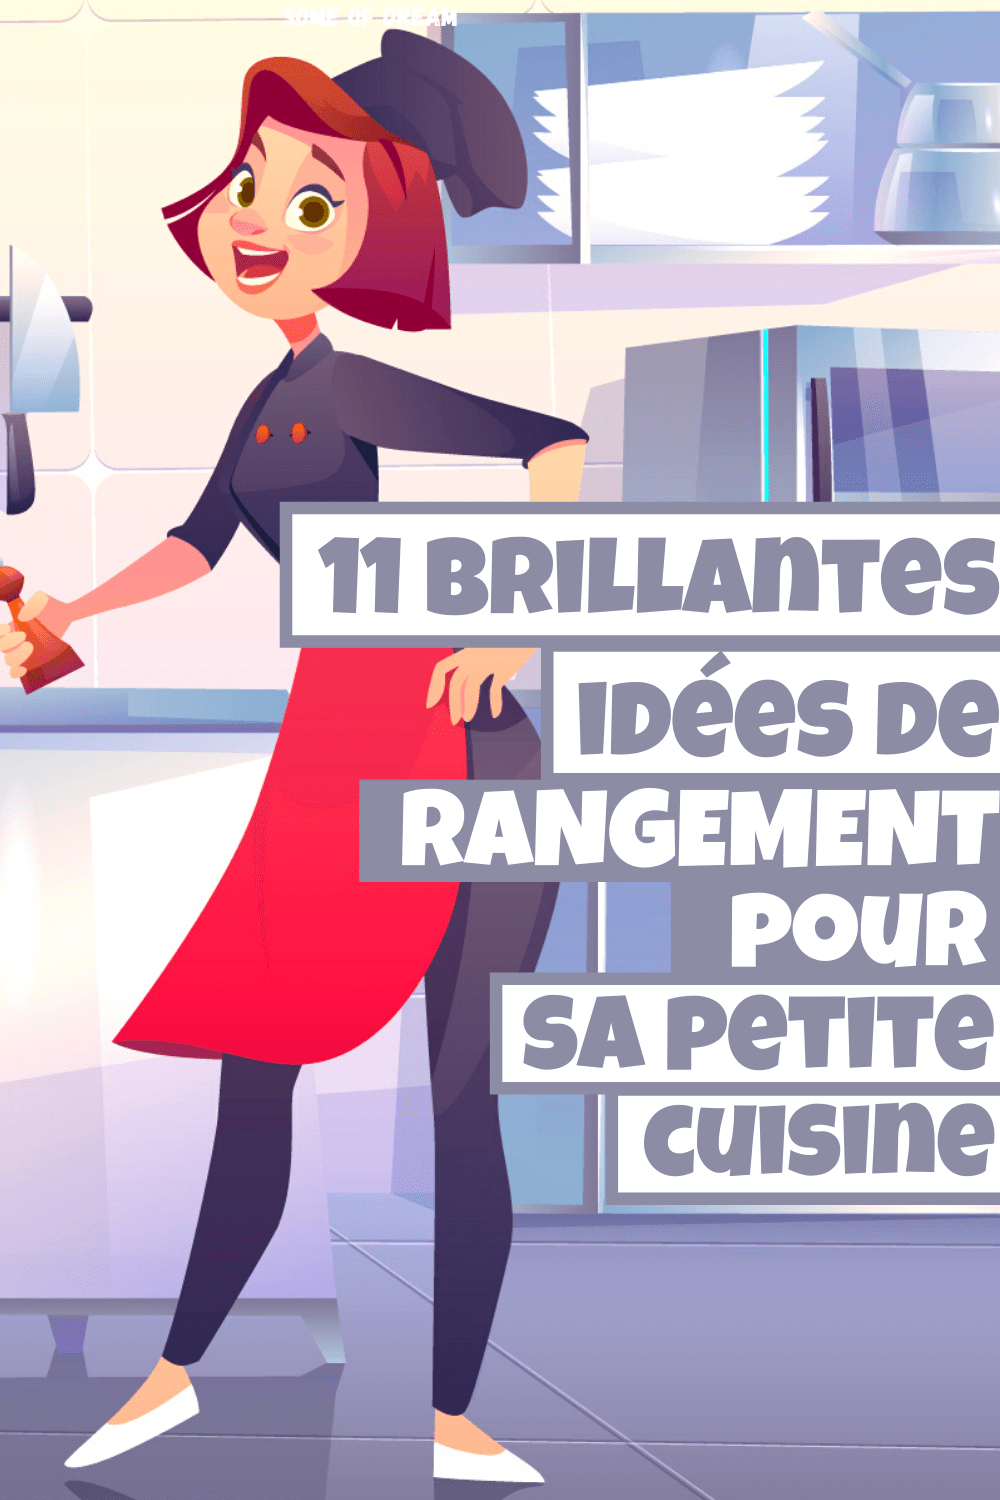 11 brillantes idées de rangement pour une petite cuisine !